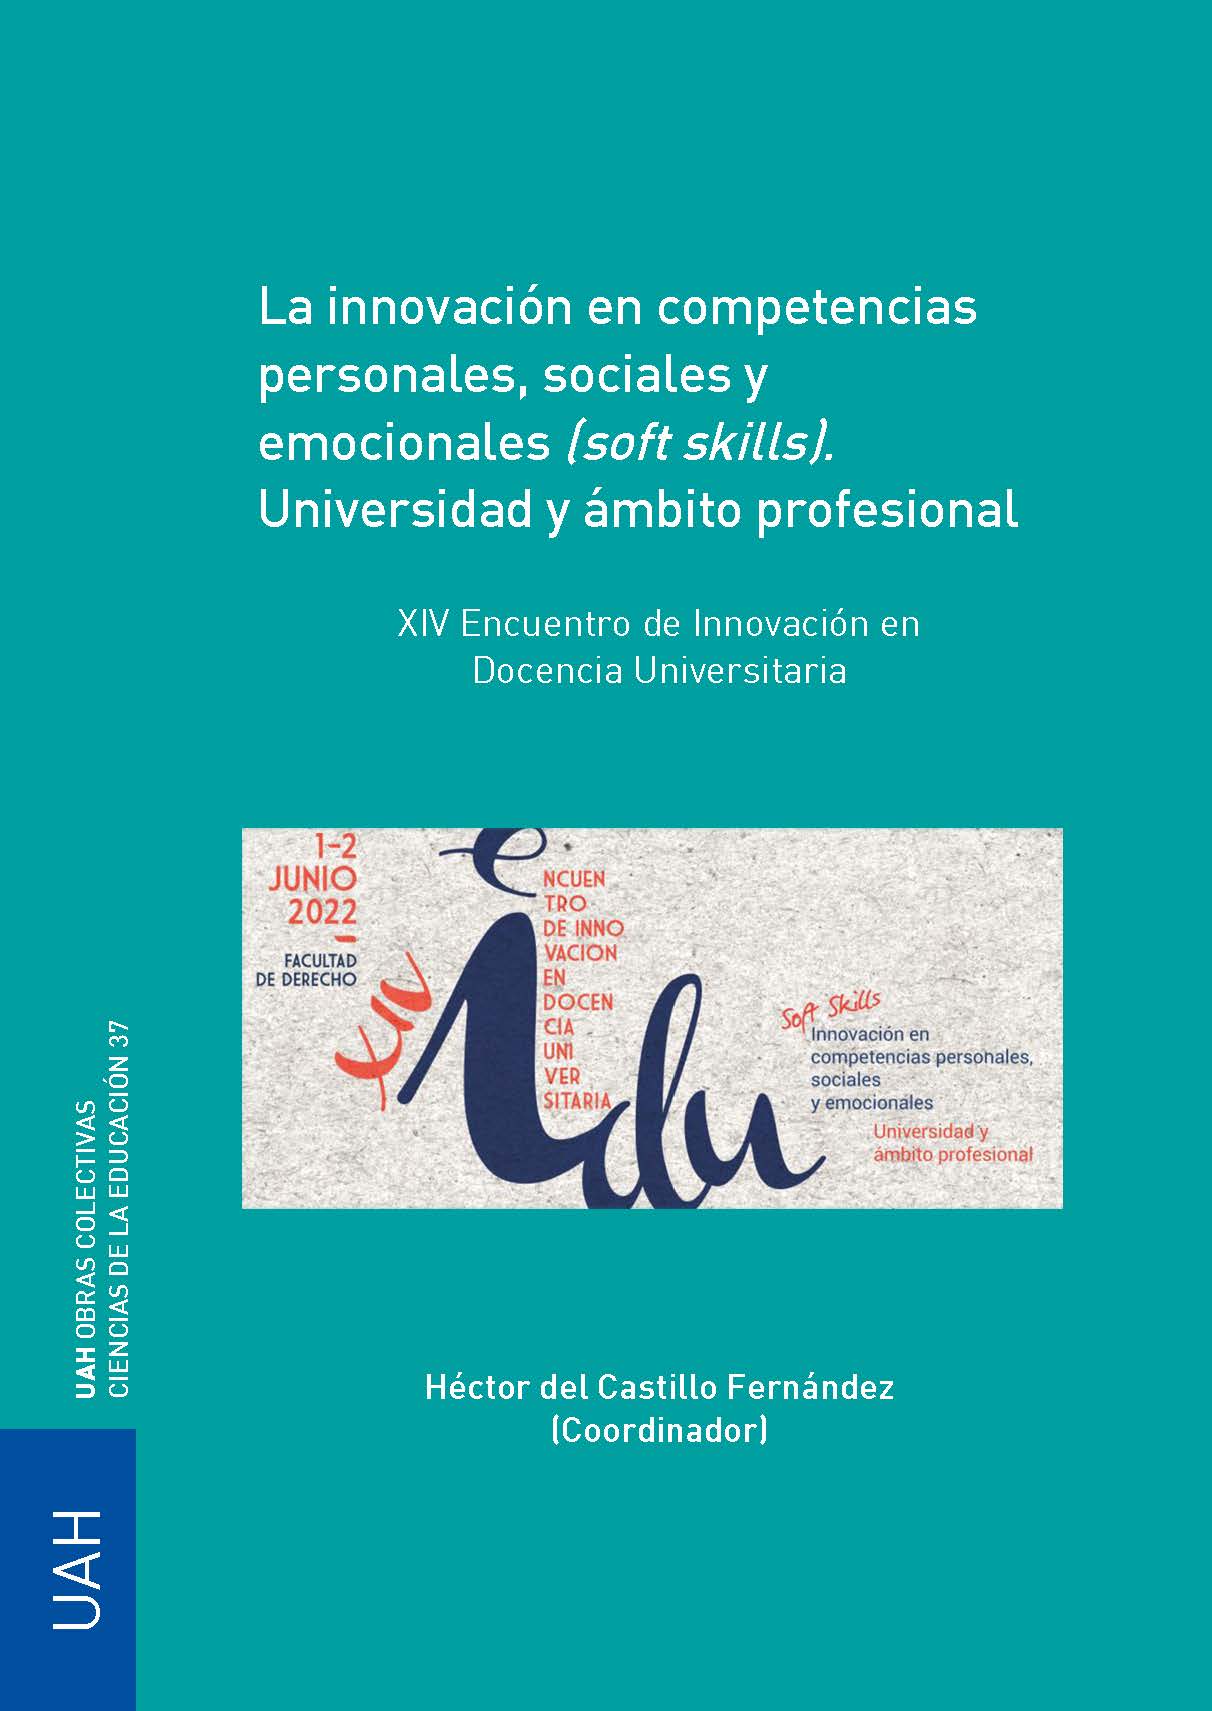 XIV Encuentro de Innovación en Docencia Universitaria: La innovación en competencias personales, sociales y emocionales (soft skills). Universidad y ámbito profesional